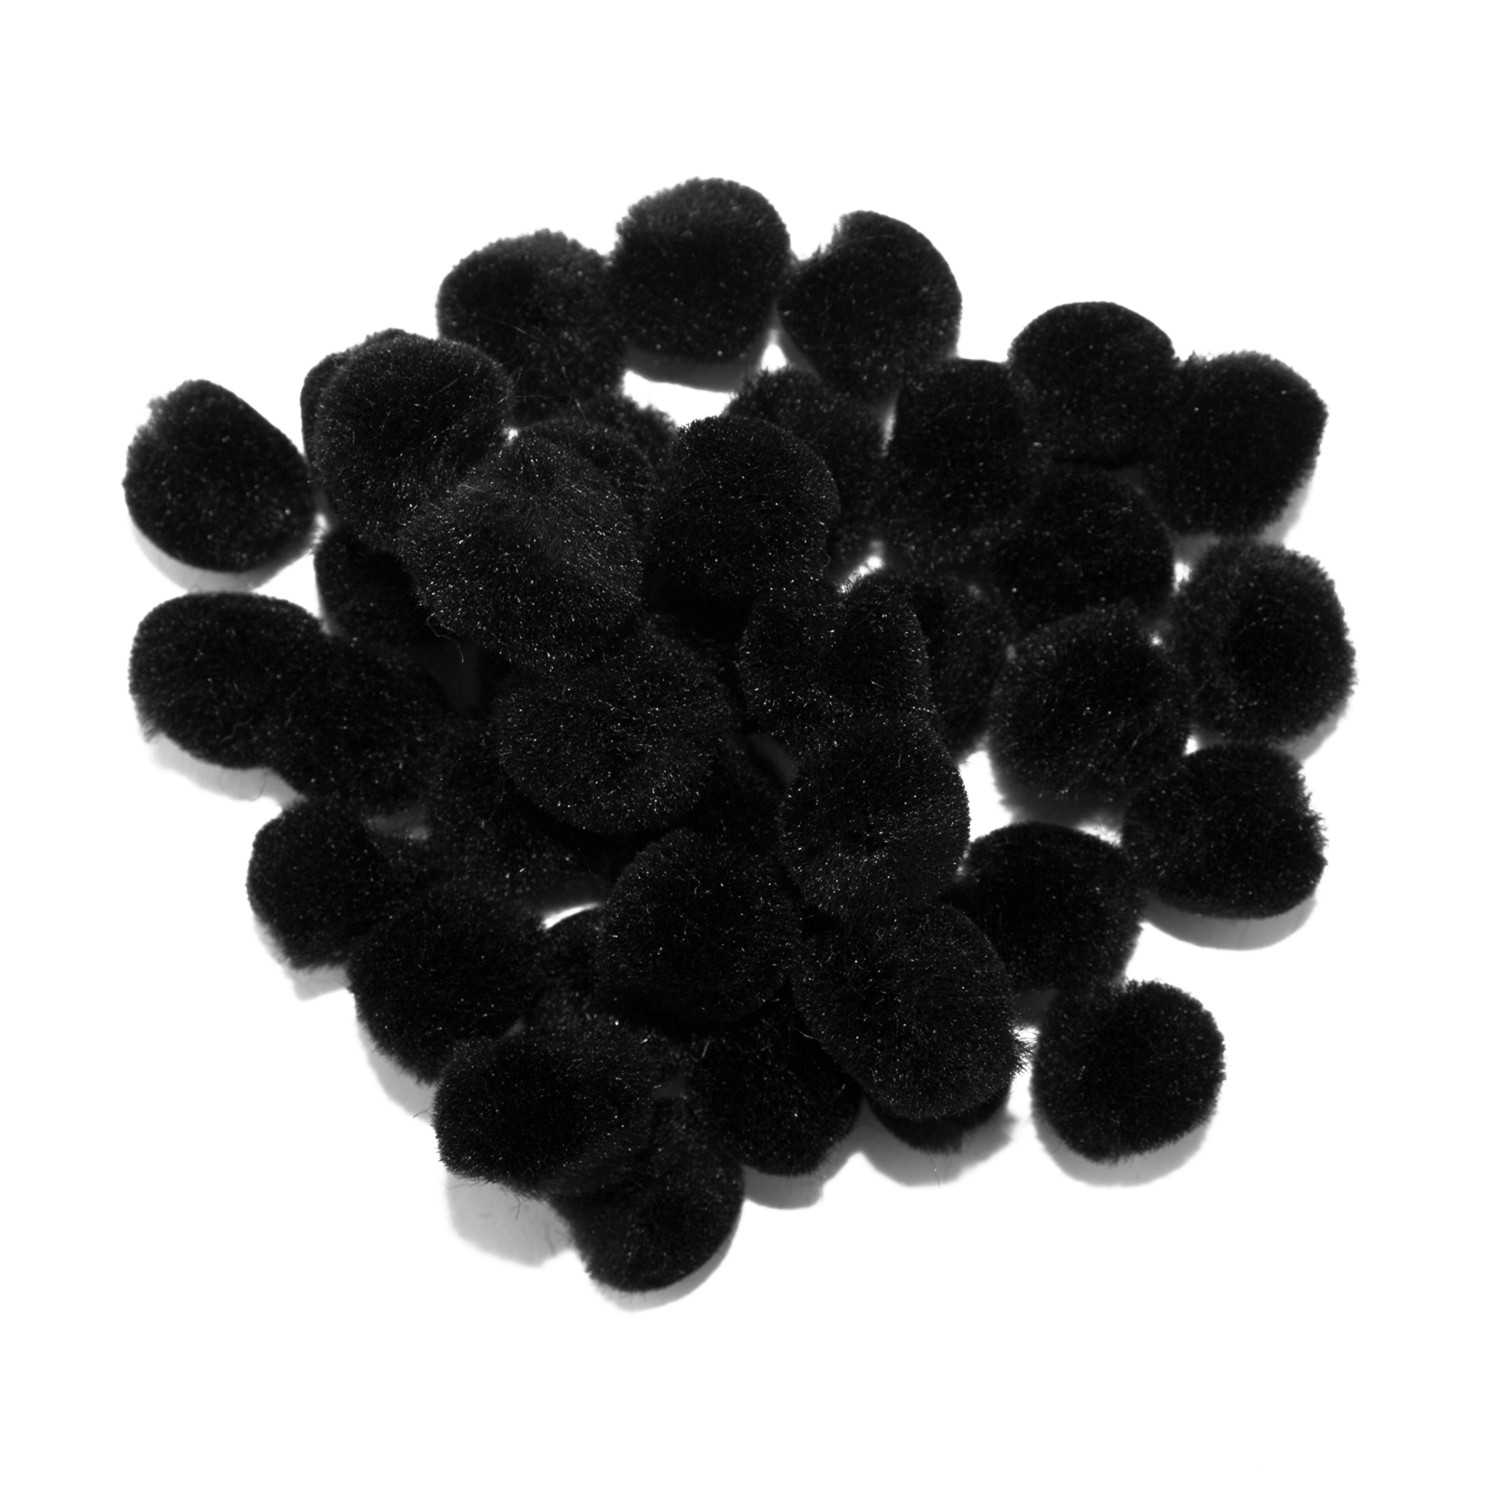 Black Pom Poms - 12 Pack